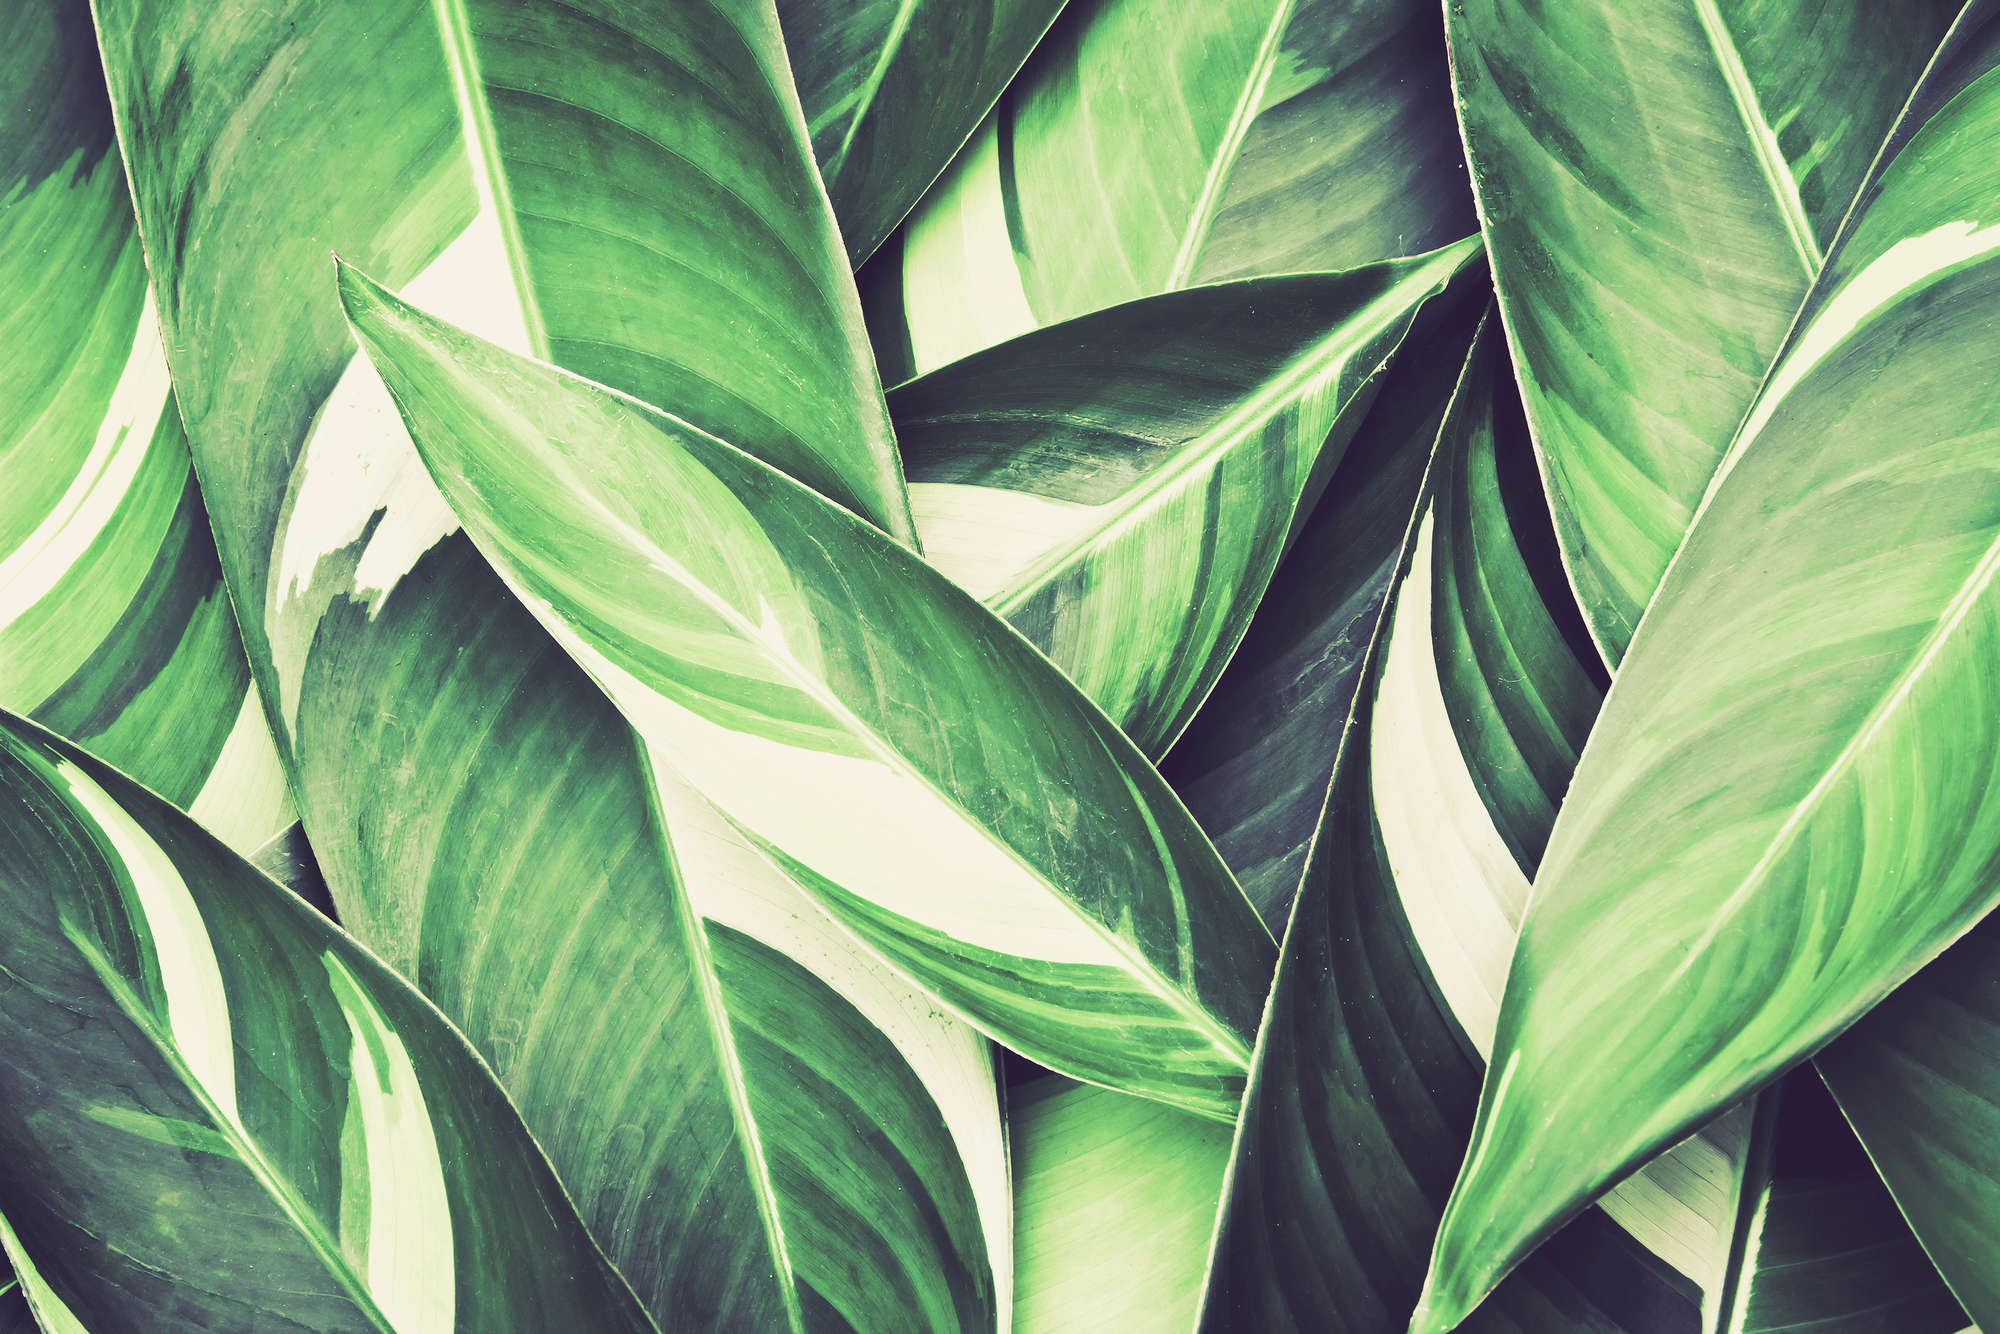             Nature Papier peint feuilles de palmier motif vert sur intissé lisse mat
        